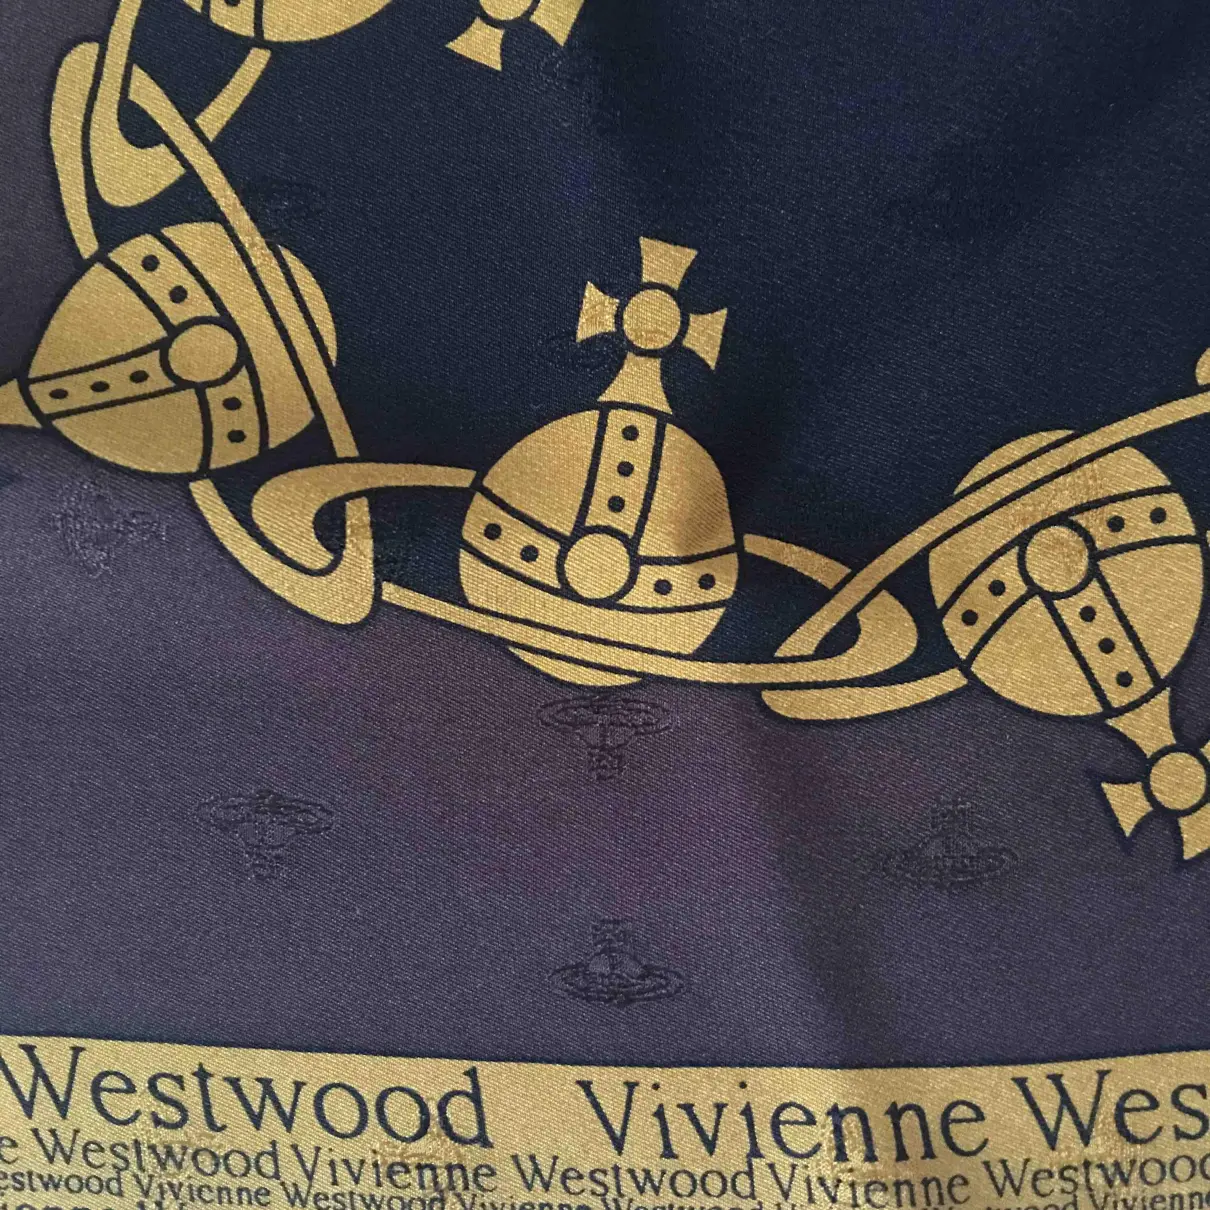 Buy Vivienne Westwood Silk neckerchief online - Vintage